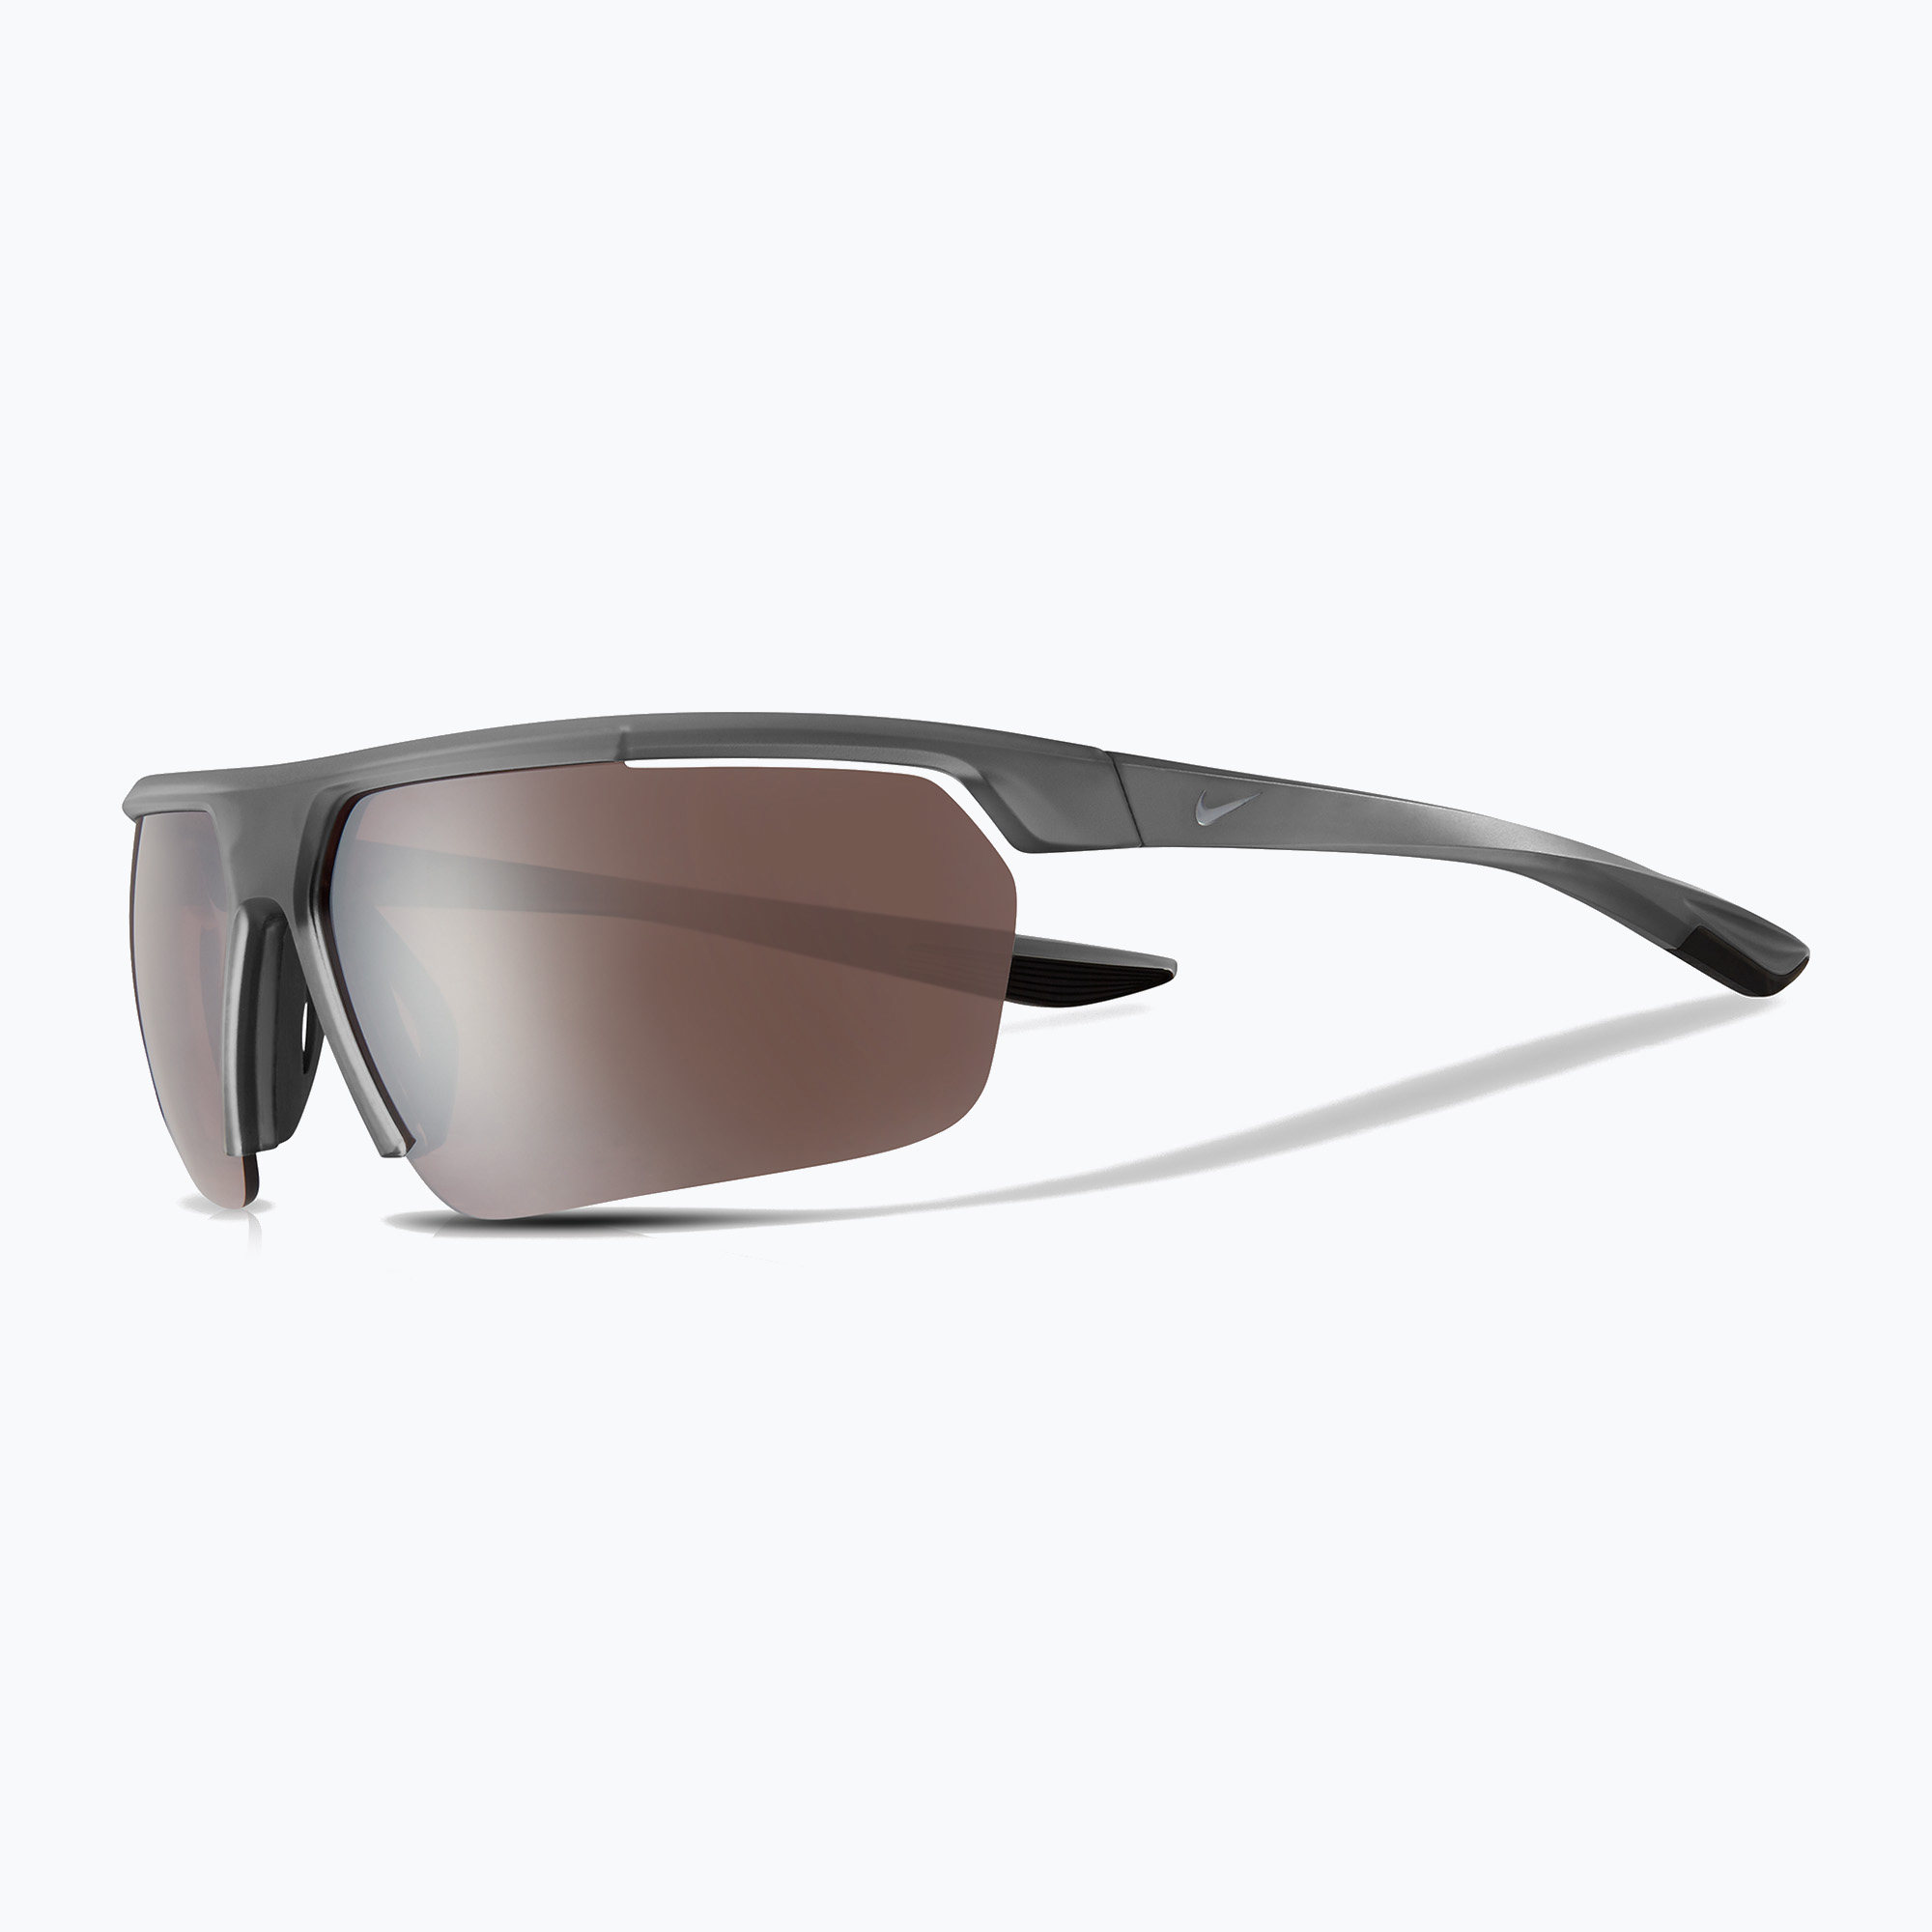 Слънчеви очила Nike Gale Force матово тъмно сиво/вълче сиво/пътнически оттенък